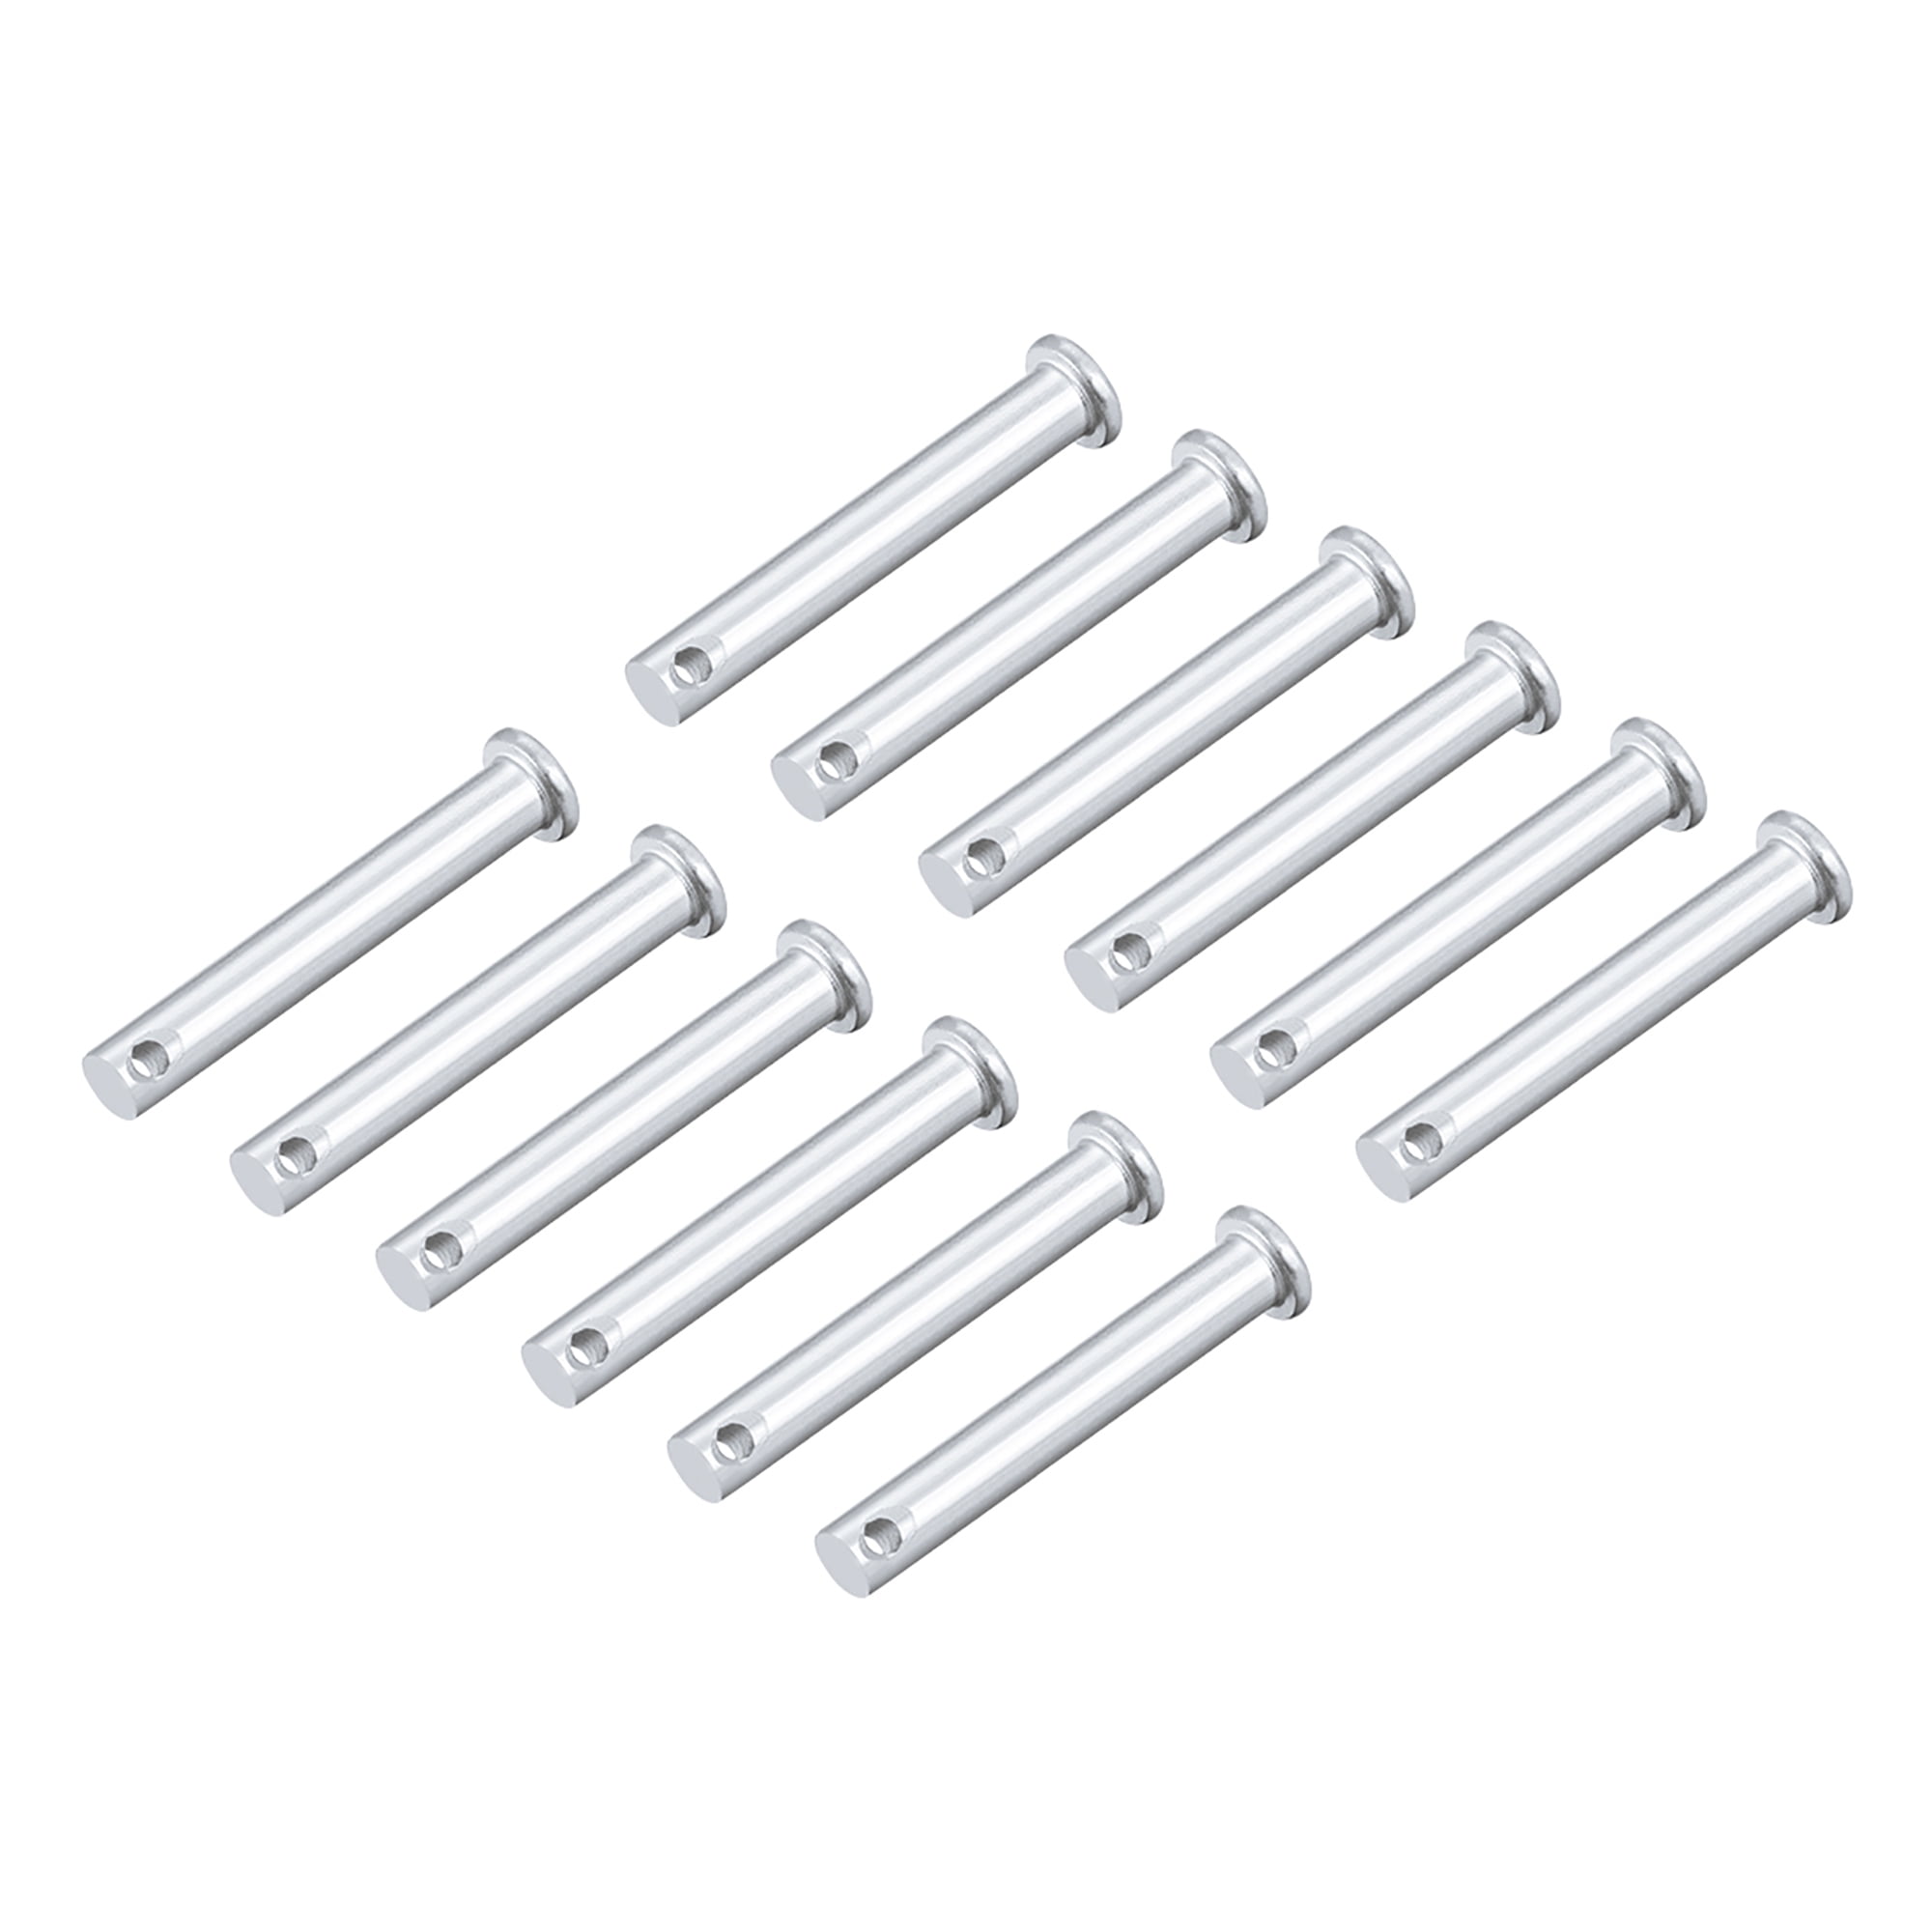 Single Hole Clevis Pins 8mm x 20mm Flat Head Zinc-Plating Solid Steel Pin 20Pcs 